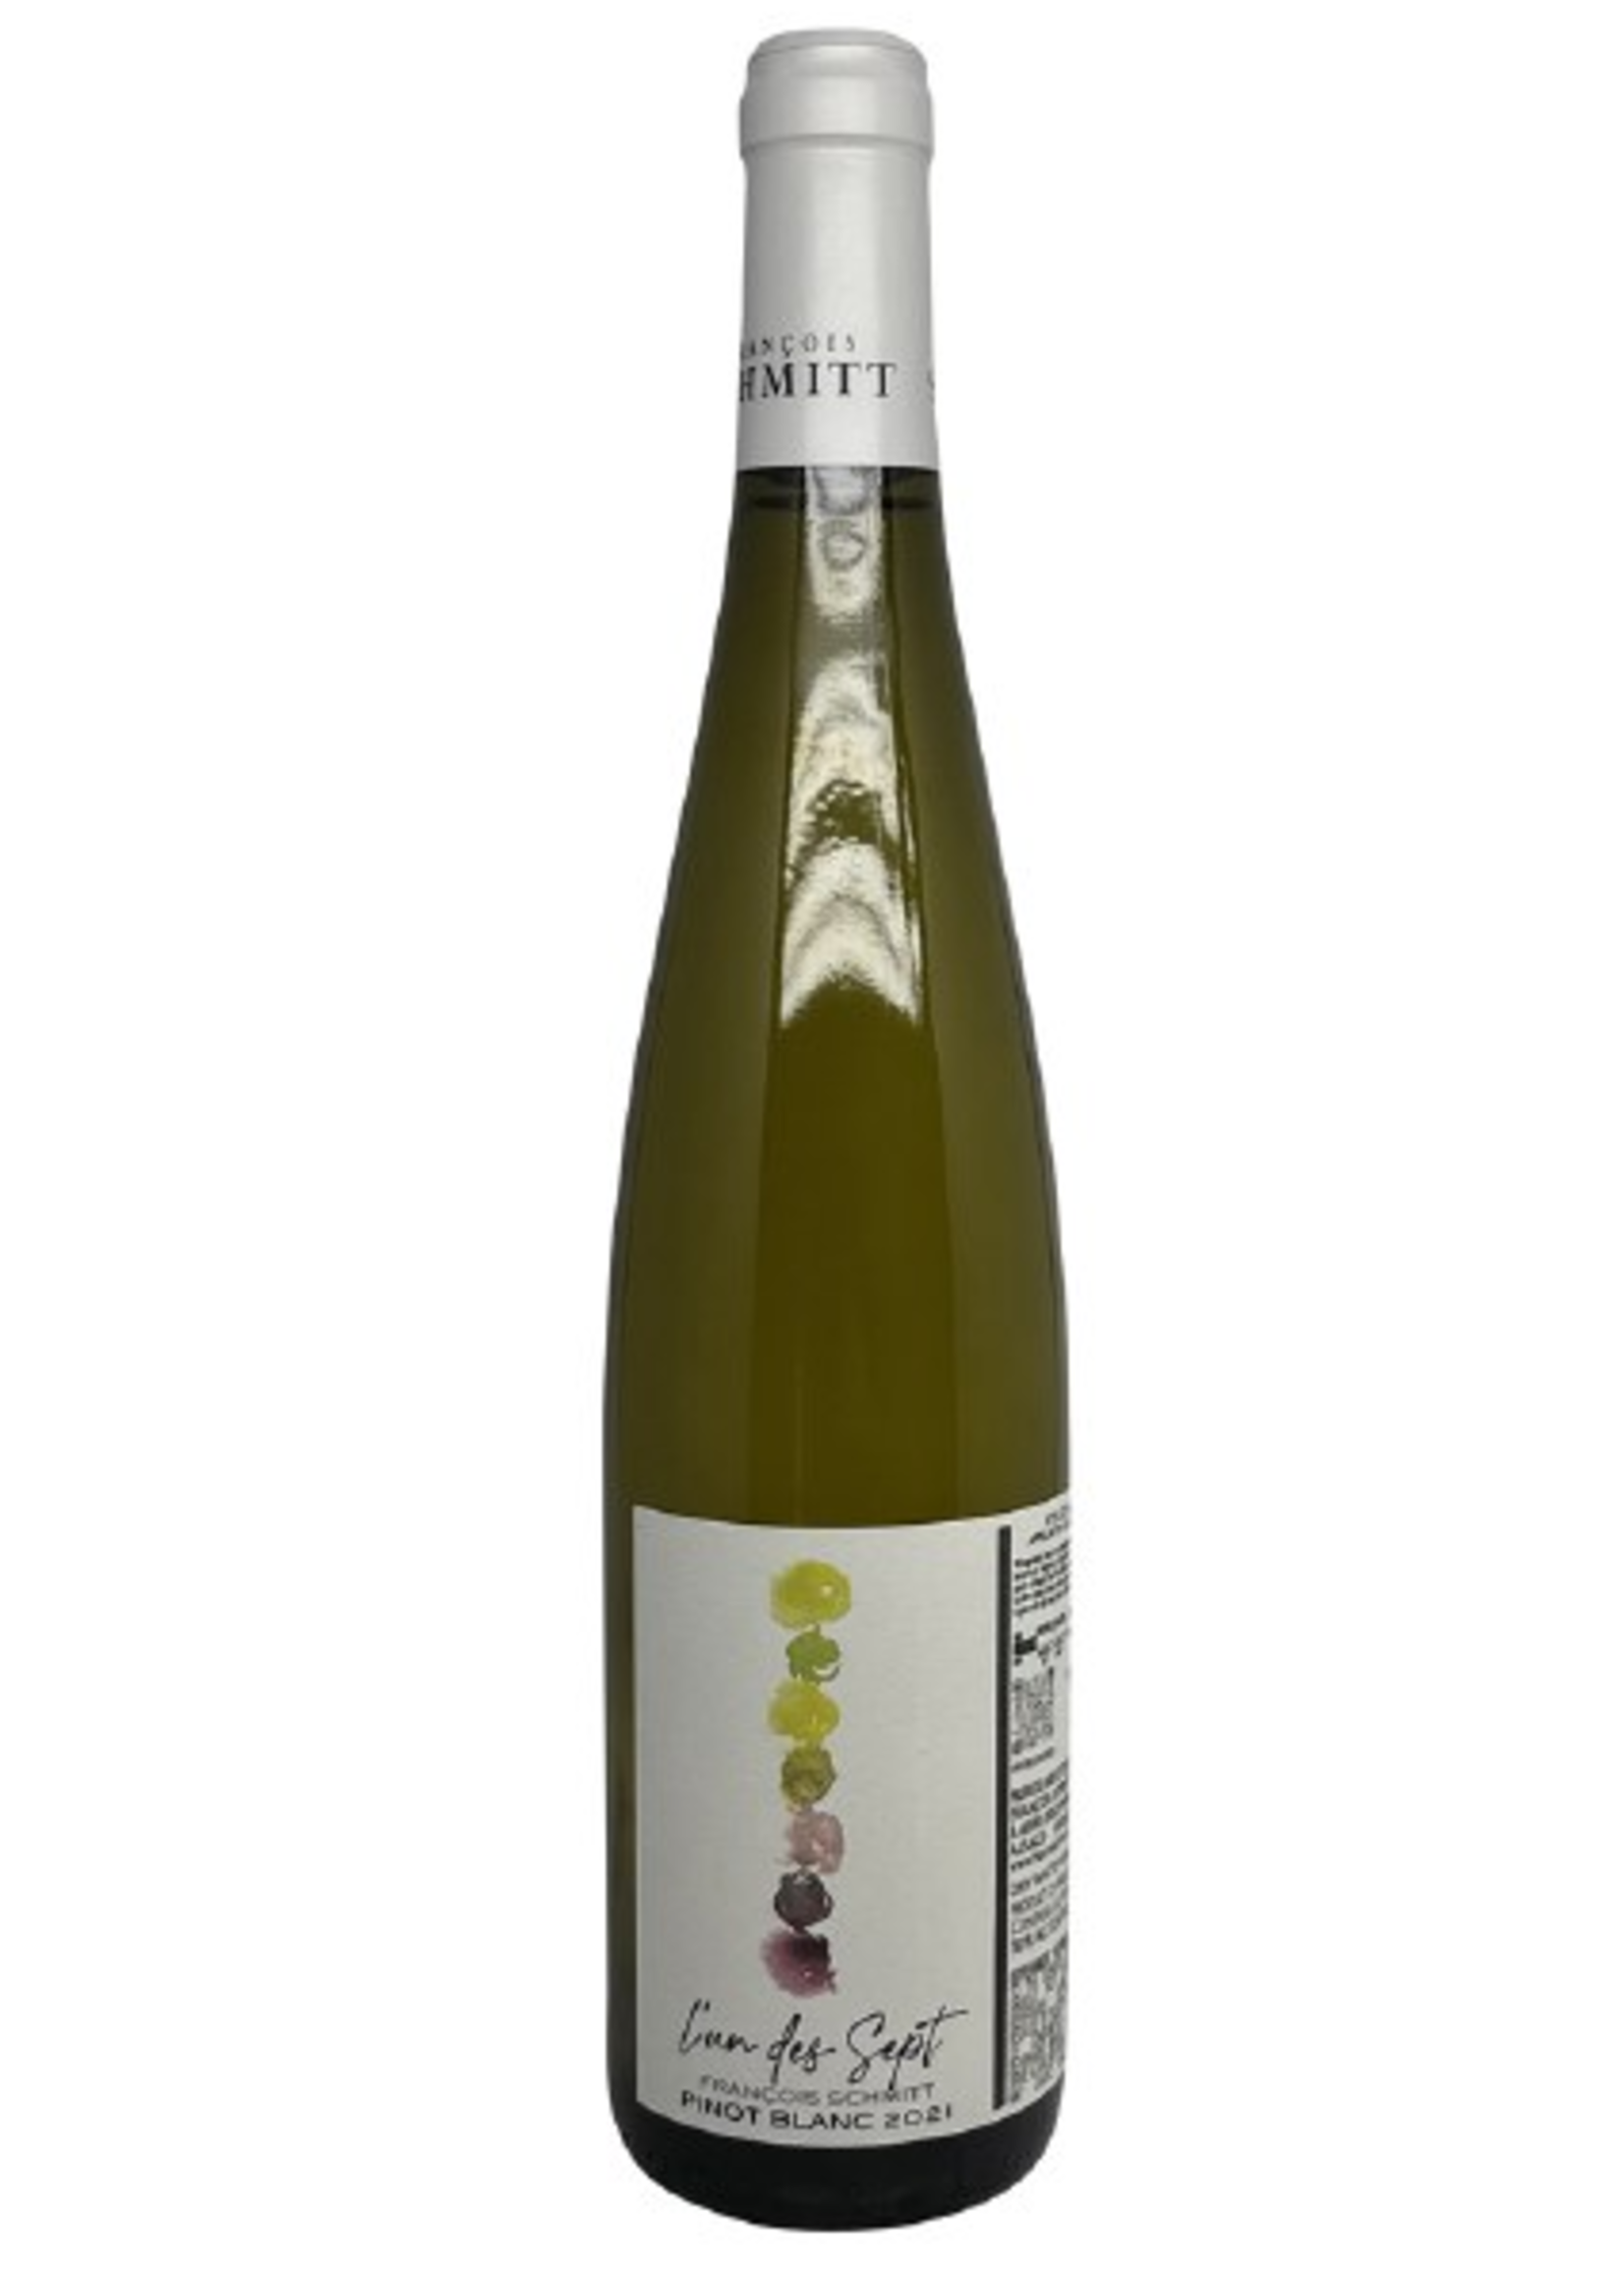 Domaine Francois Schmitt Domaine Francois Schmitt / Alsace L’un des Sept Pinot Blanc 2021 / 750mL